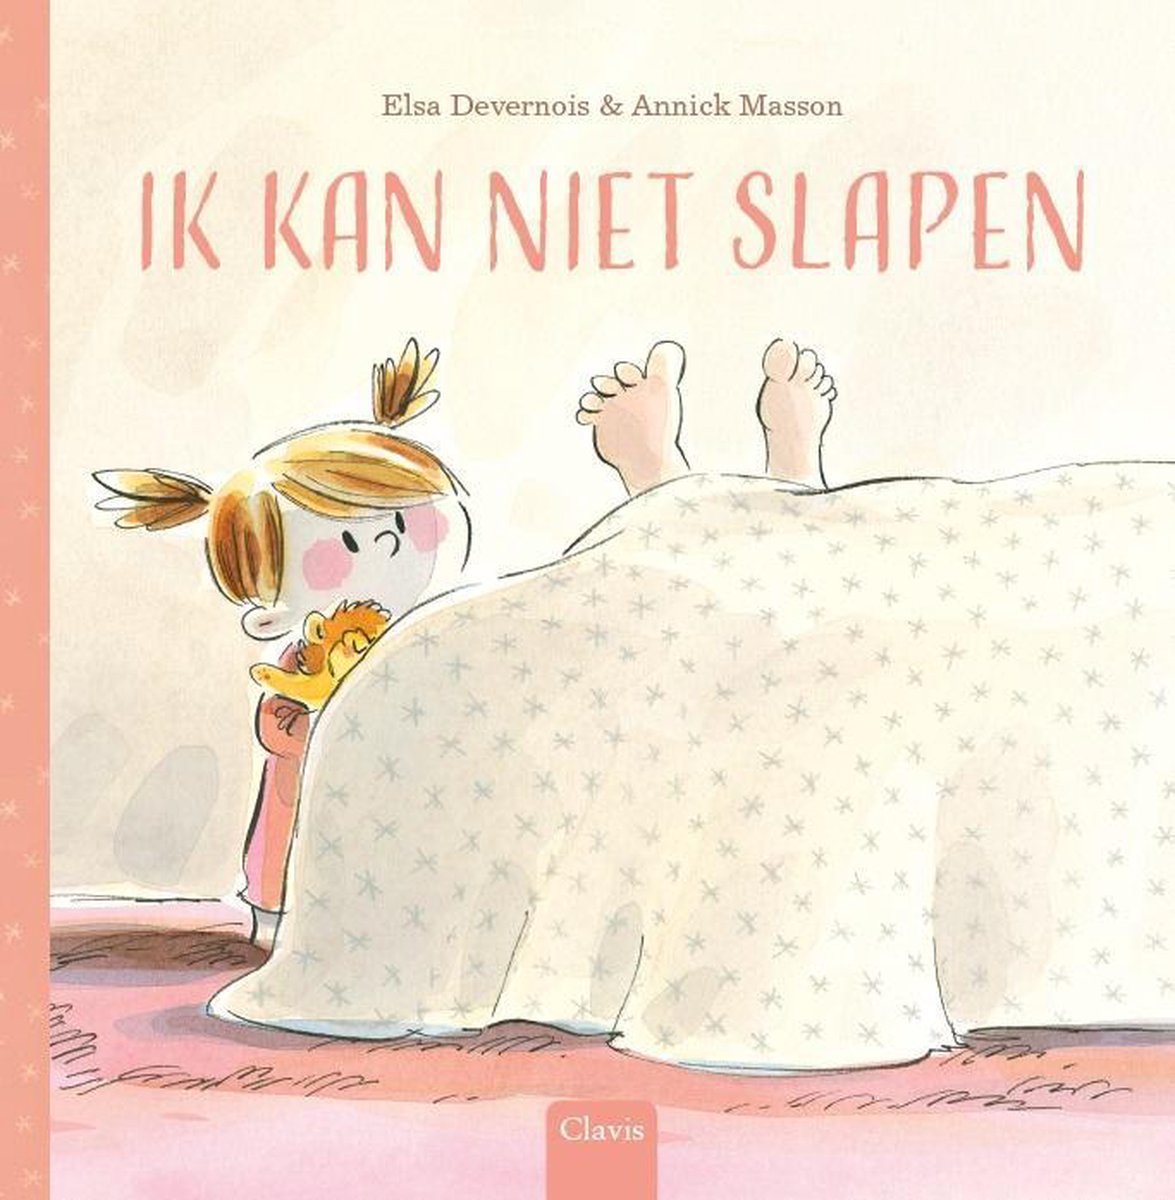 Ik kan niet slapen - Prentenboekverhaal voor kinderen vanaf 4 jaar